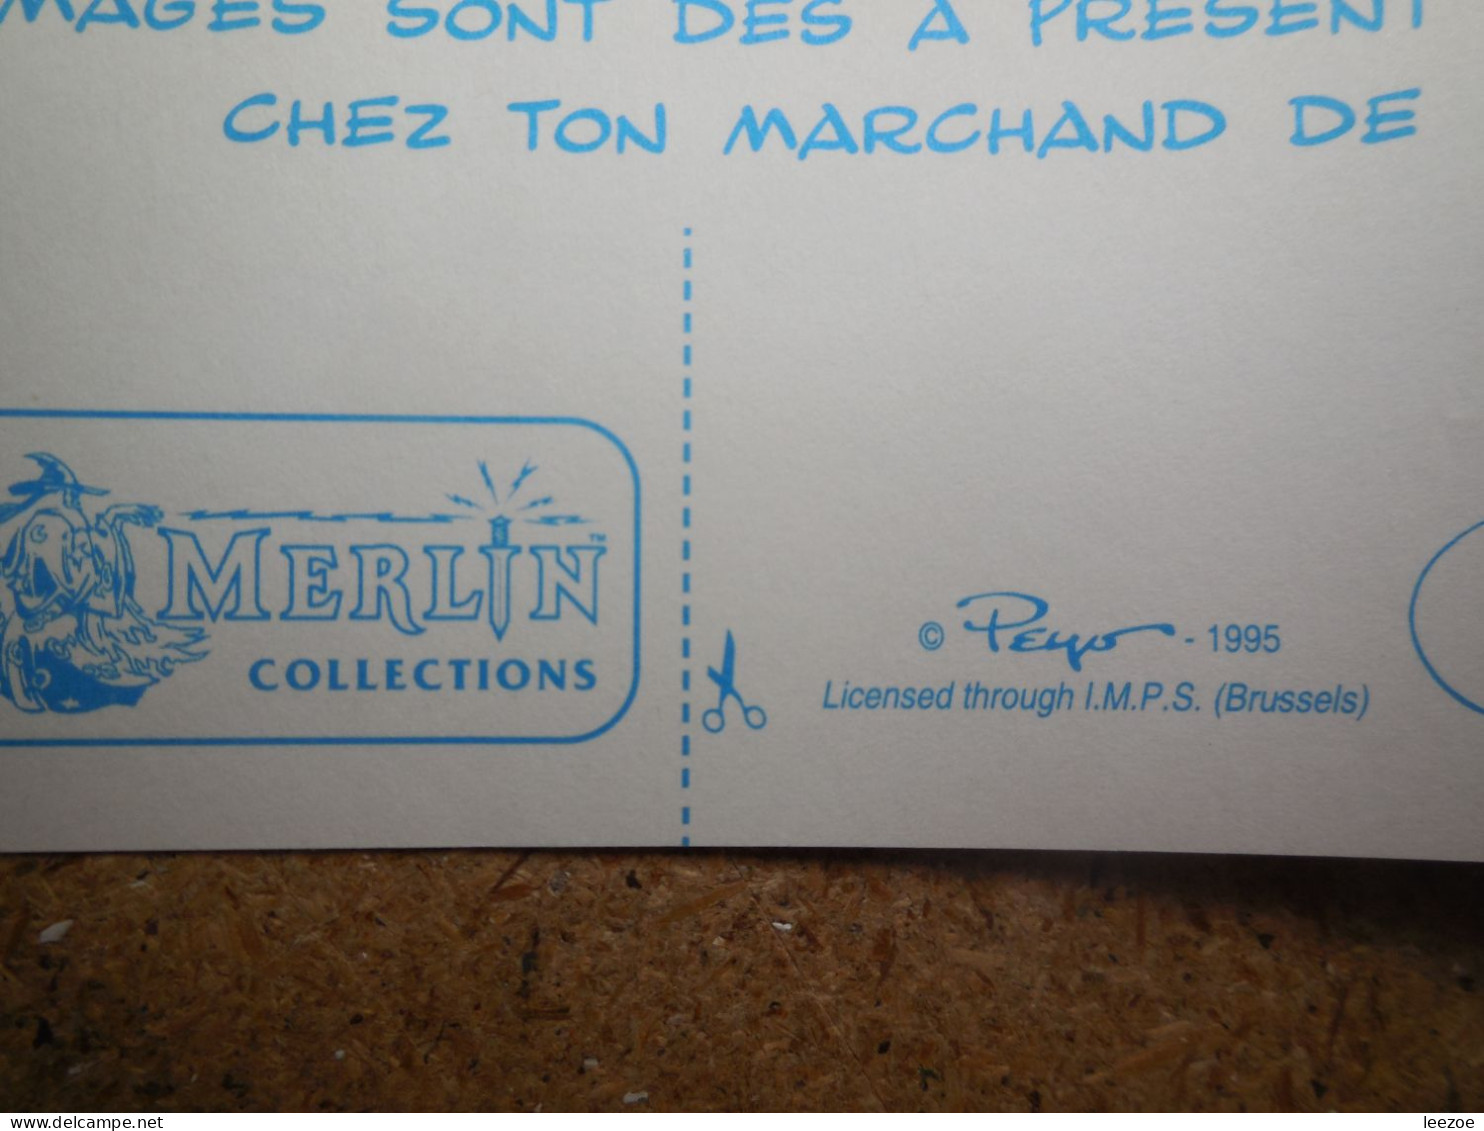 Objets Dérivés BD Les Schtroumpfs, DE SMURFEN, Autocollants, Stickers Peyo 1995 Par Merlin Collection, I.M.P.S BRUSSELS. - Zelfklevers